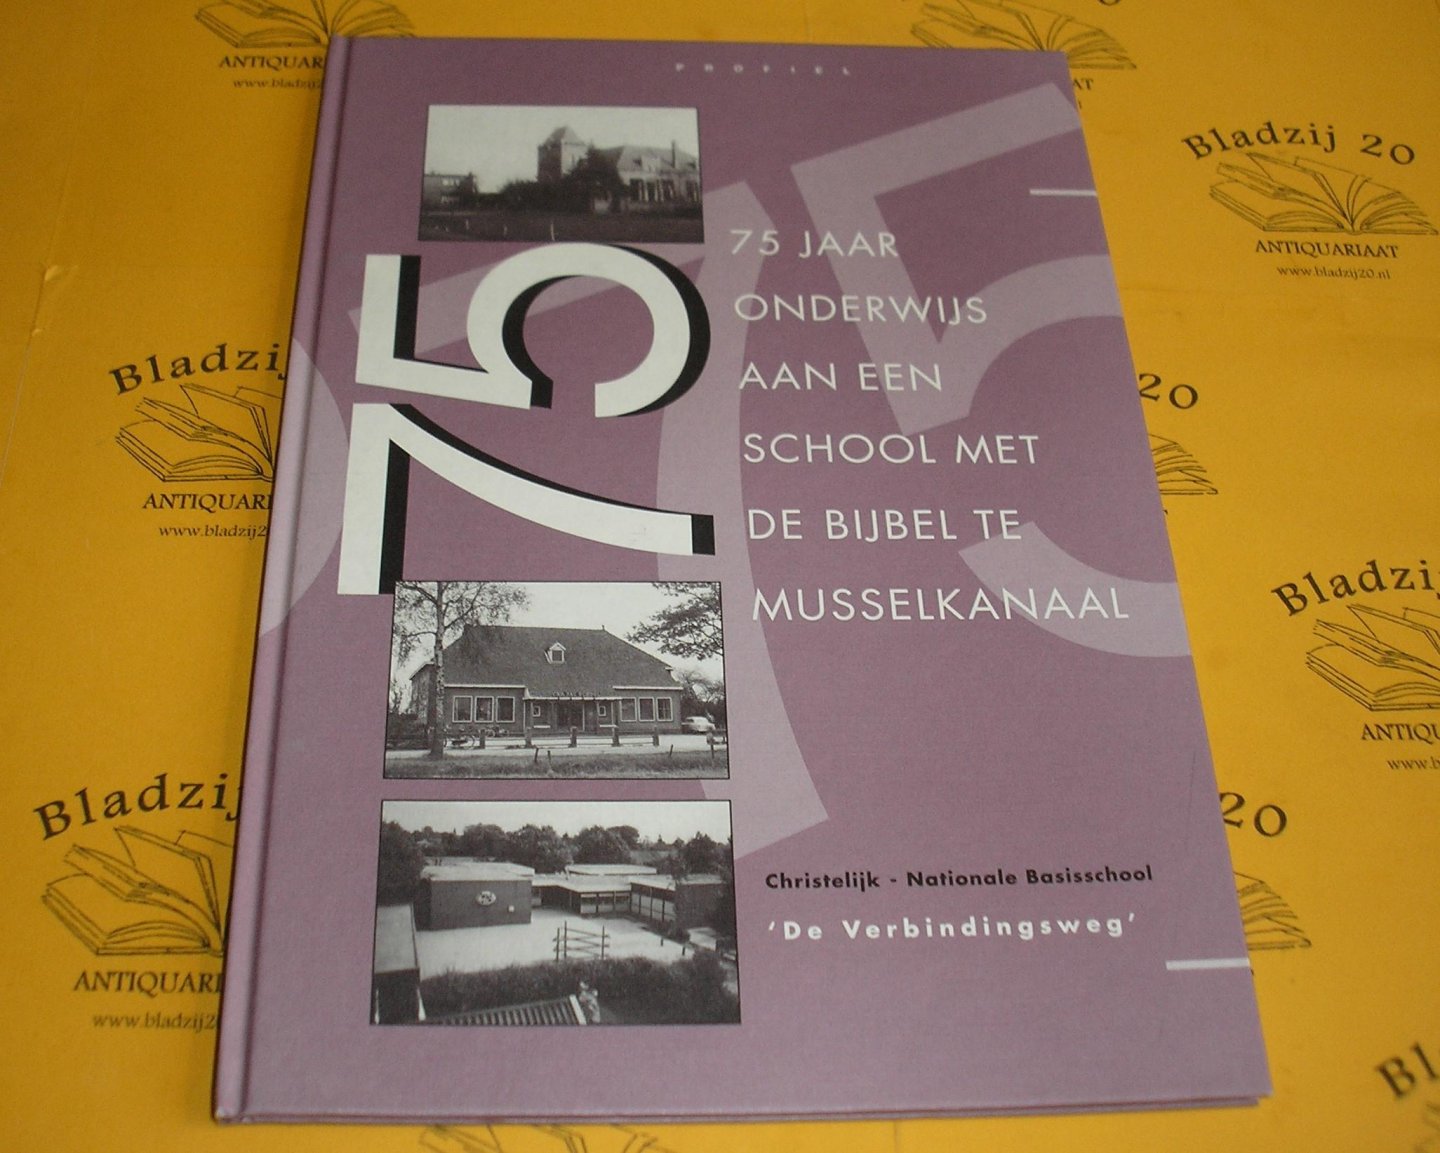 Benjamins-Klompmakers, G. e.a. - Vijf en zeventig jaar Onderwijs aan een School met de Bijbel te Musselkanaal 1919 - 1994.